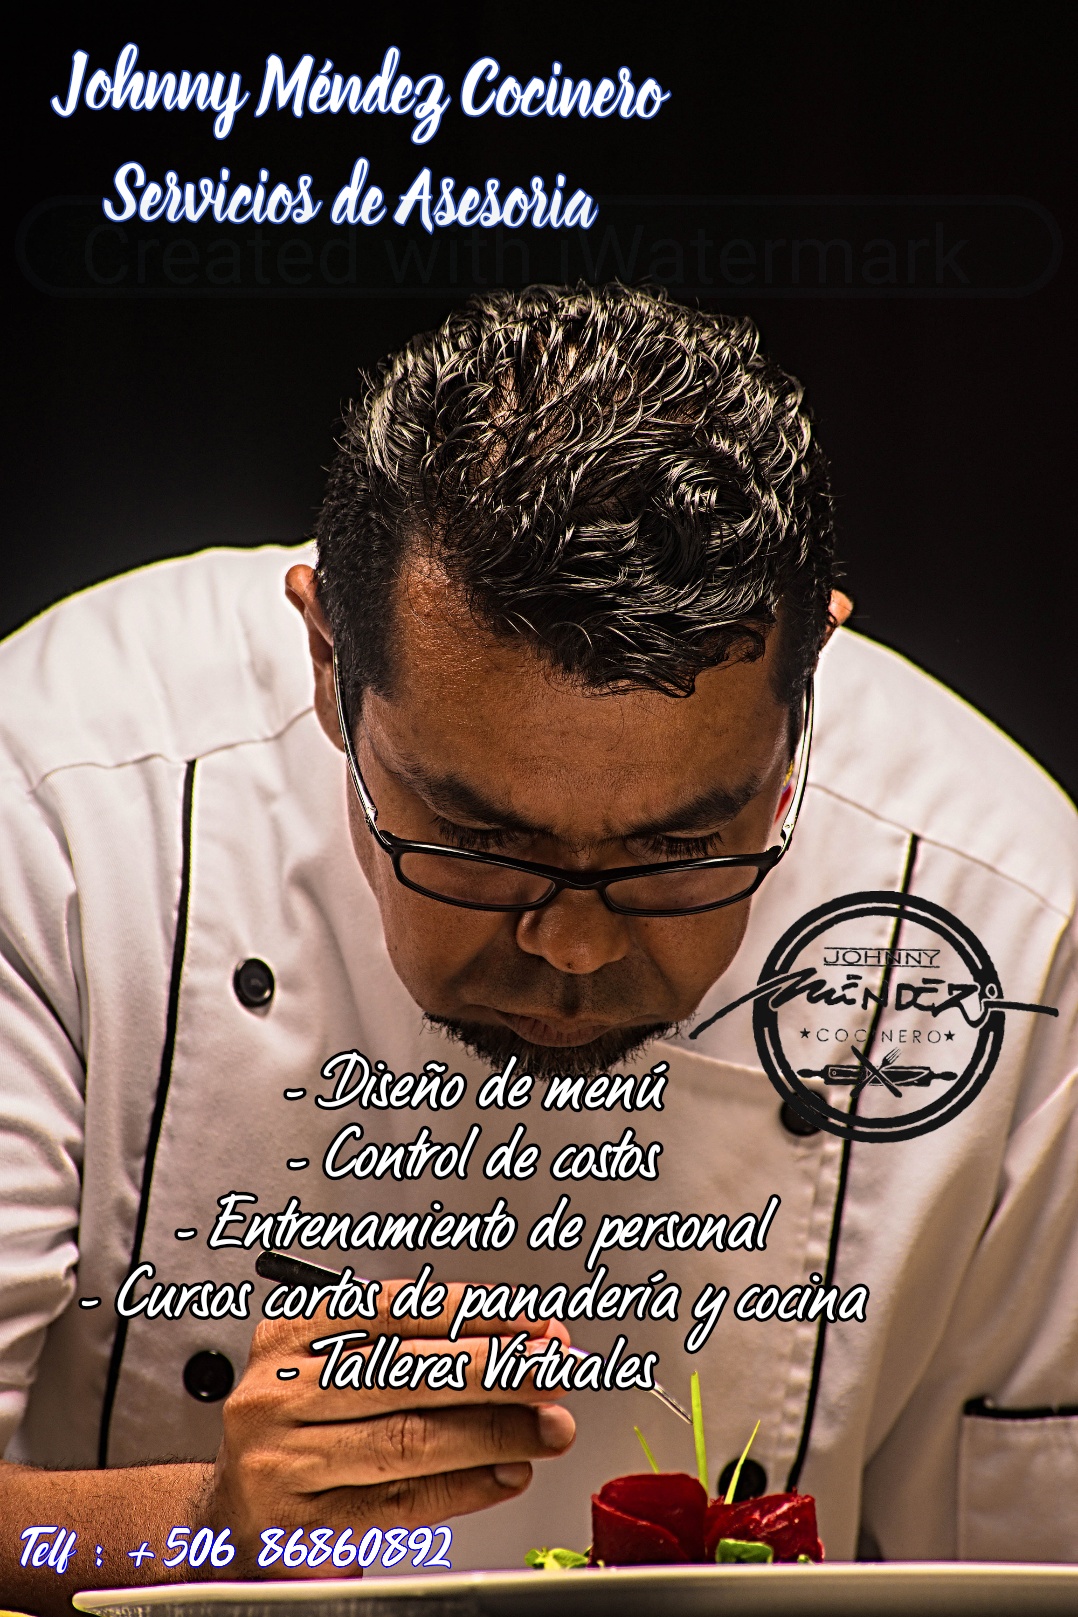 Johnny Méndez Cocinero, Servicio de Asesoria para el area de Alimentos